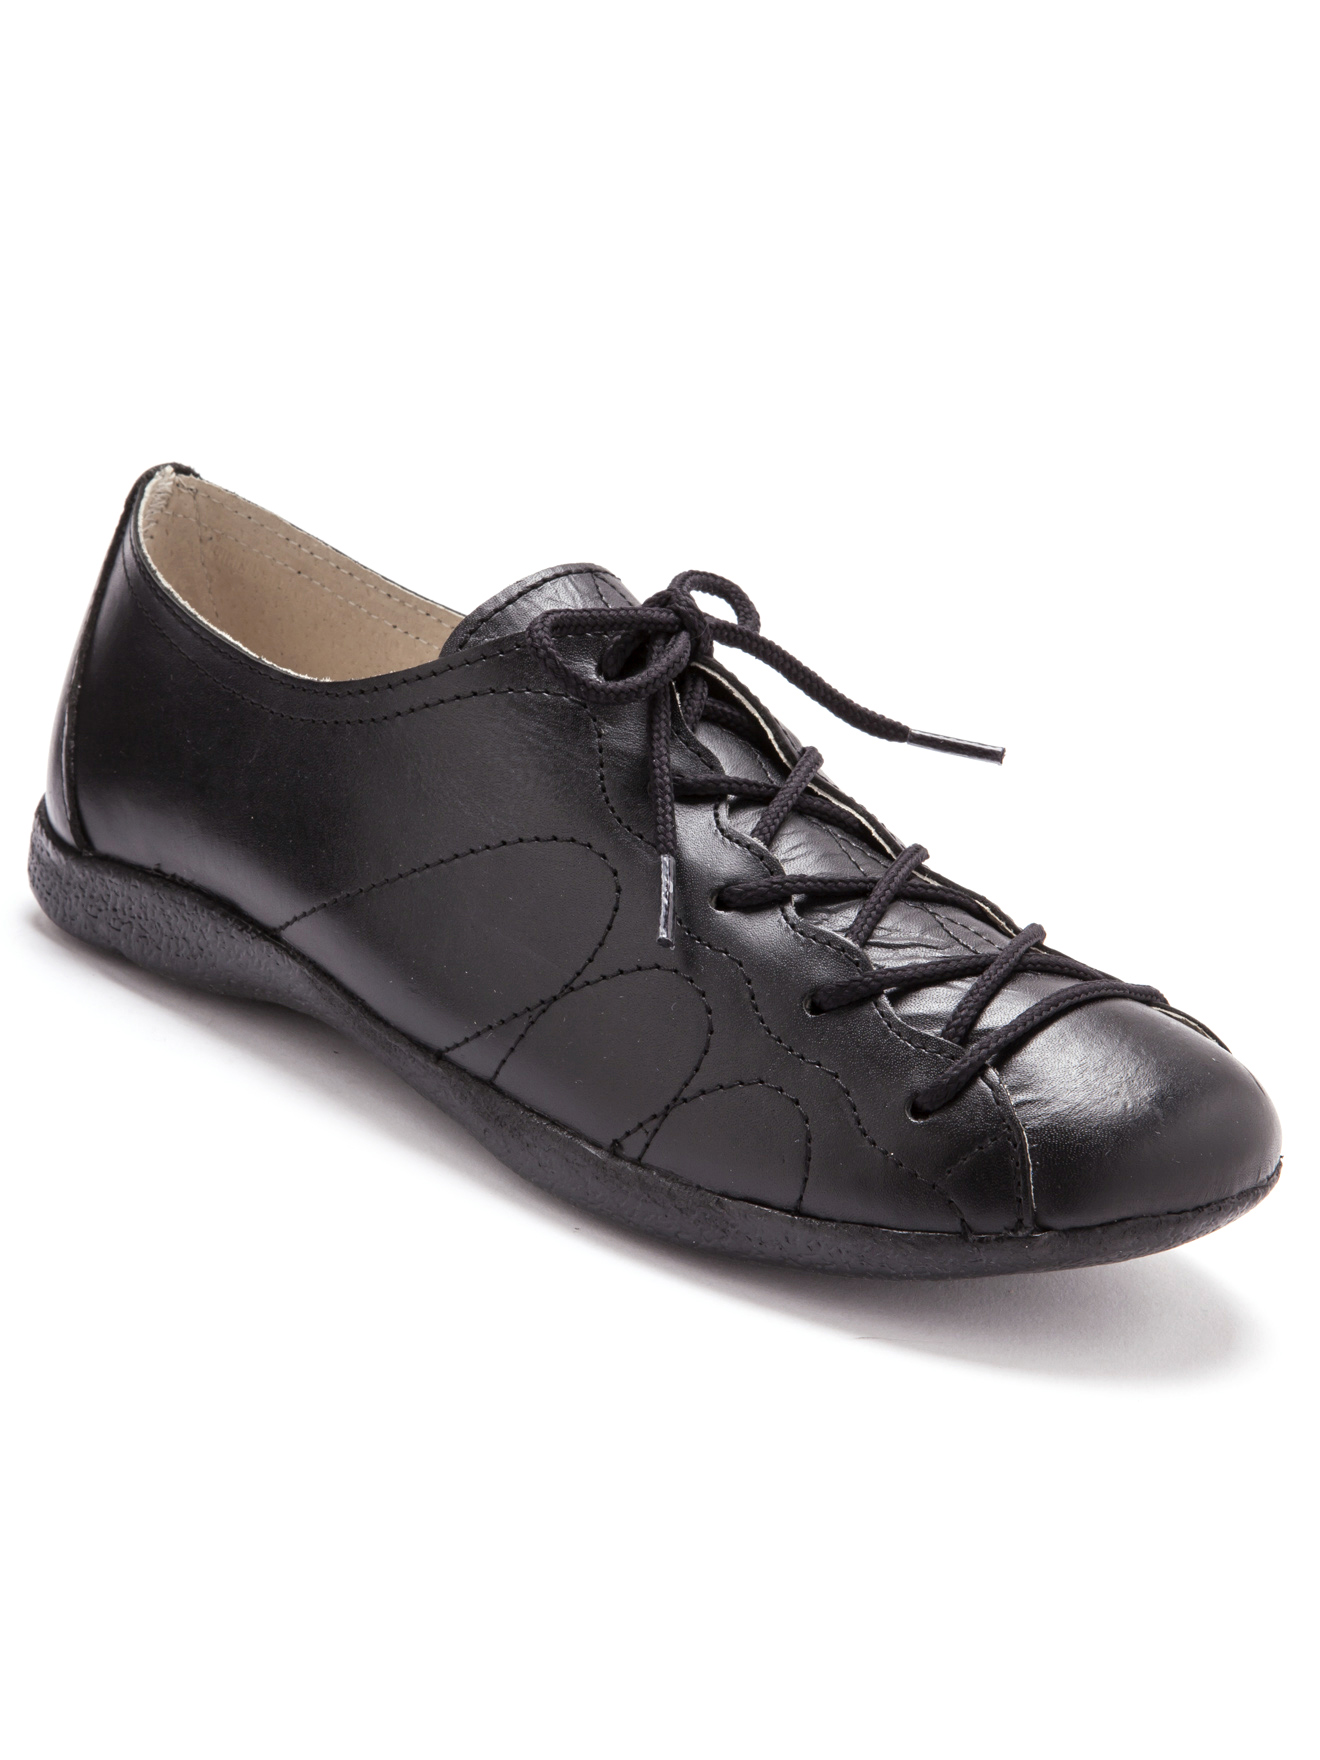 Sélection de chaussures pour femme et homme, chaussures pour pieds très  larges et/ou déformés. (largeur K) - C-Confort